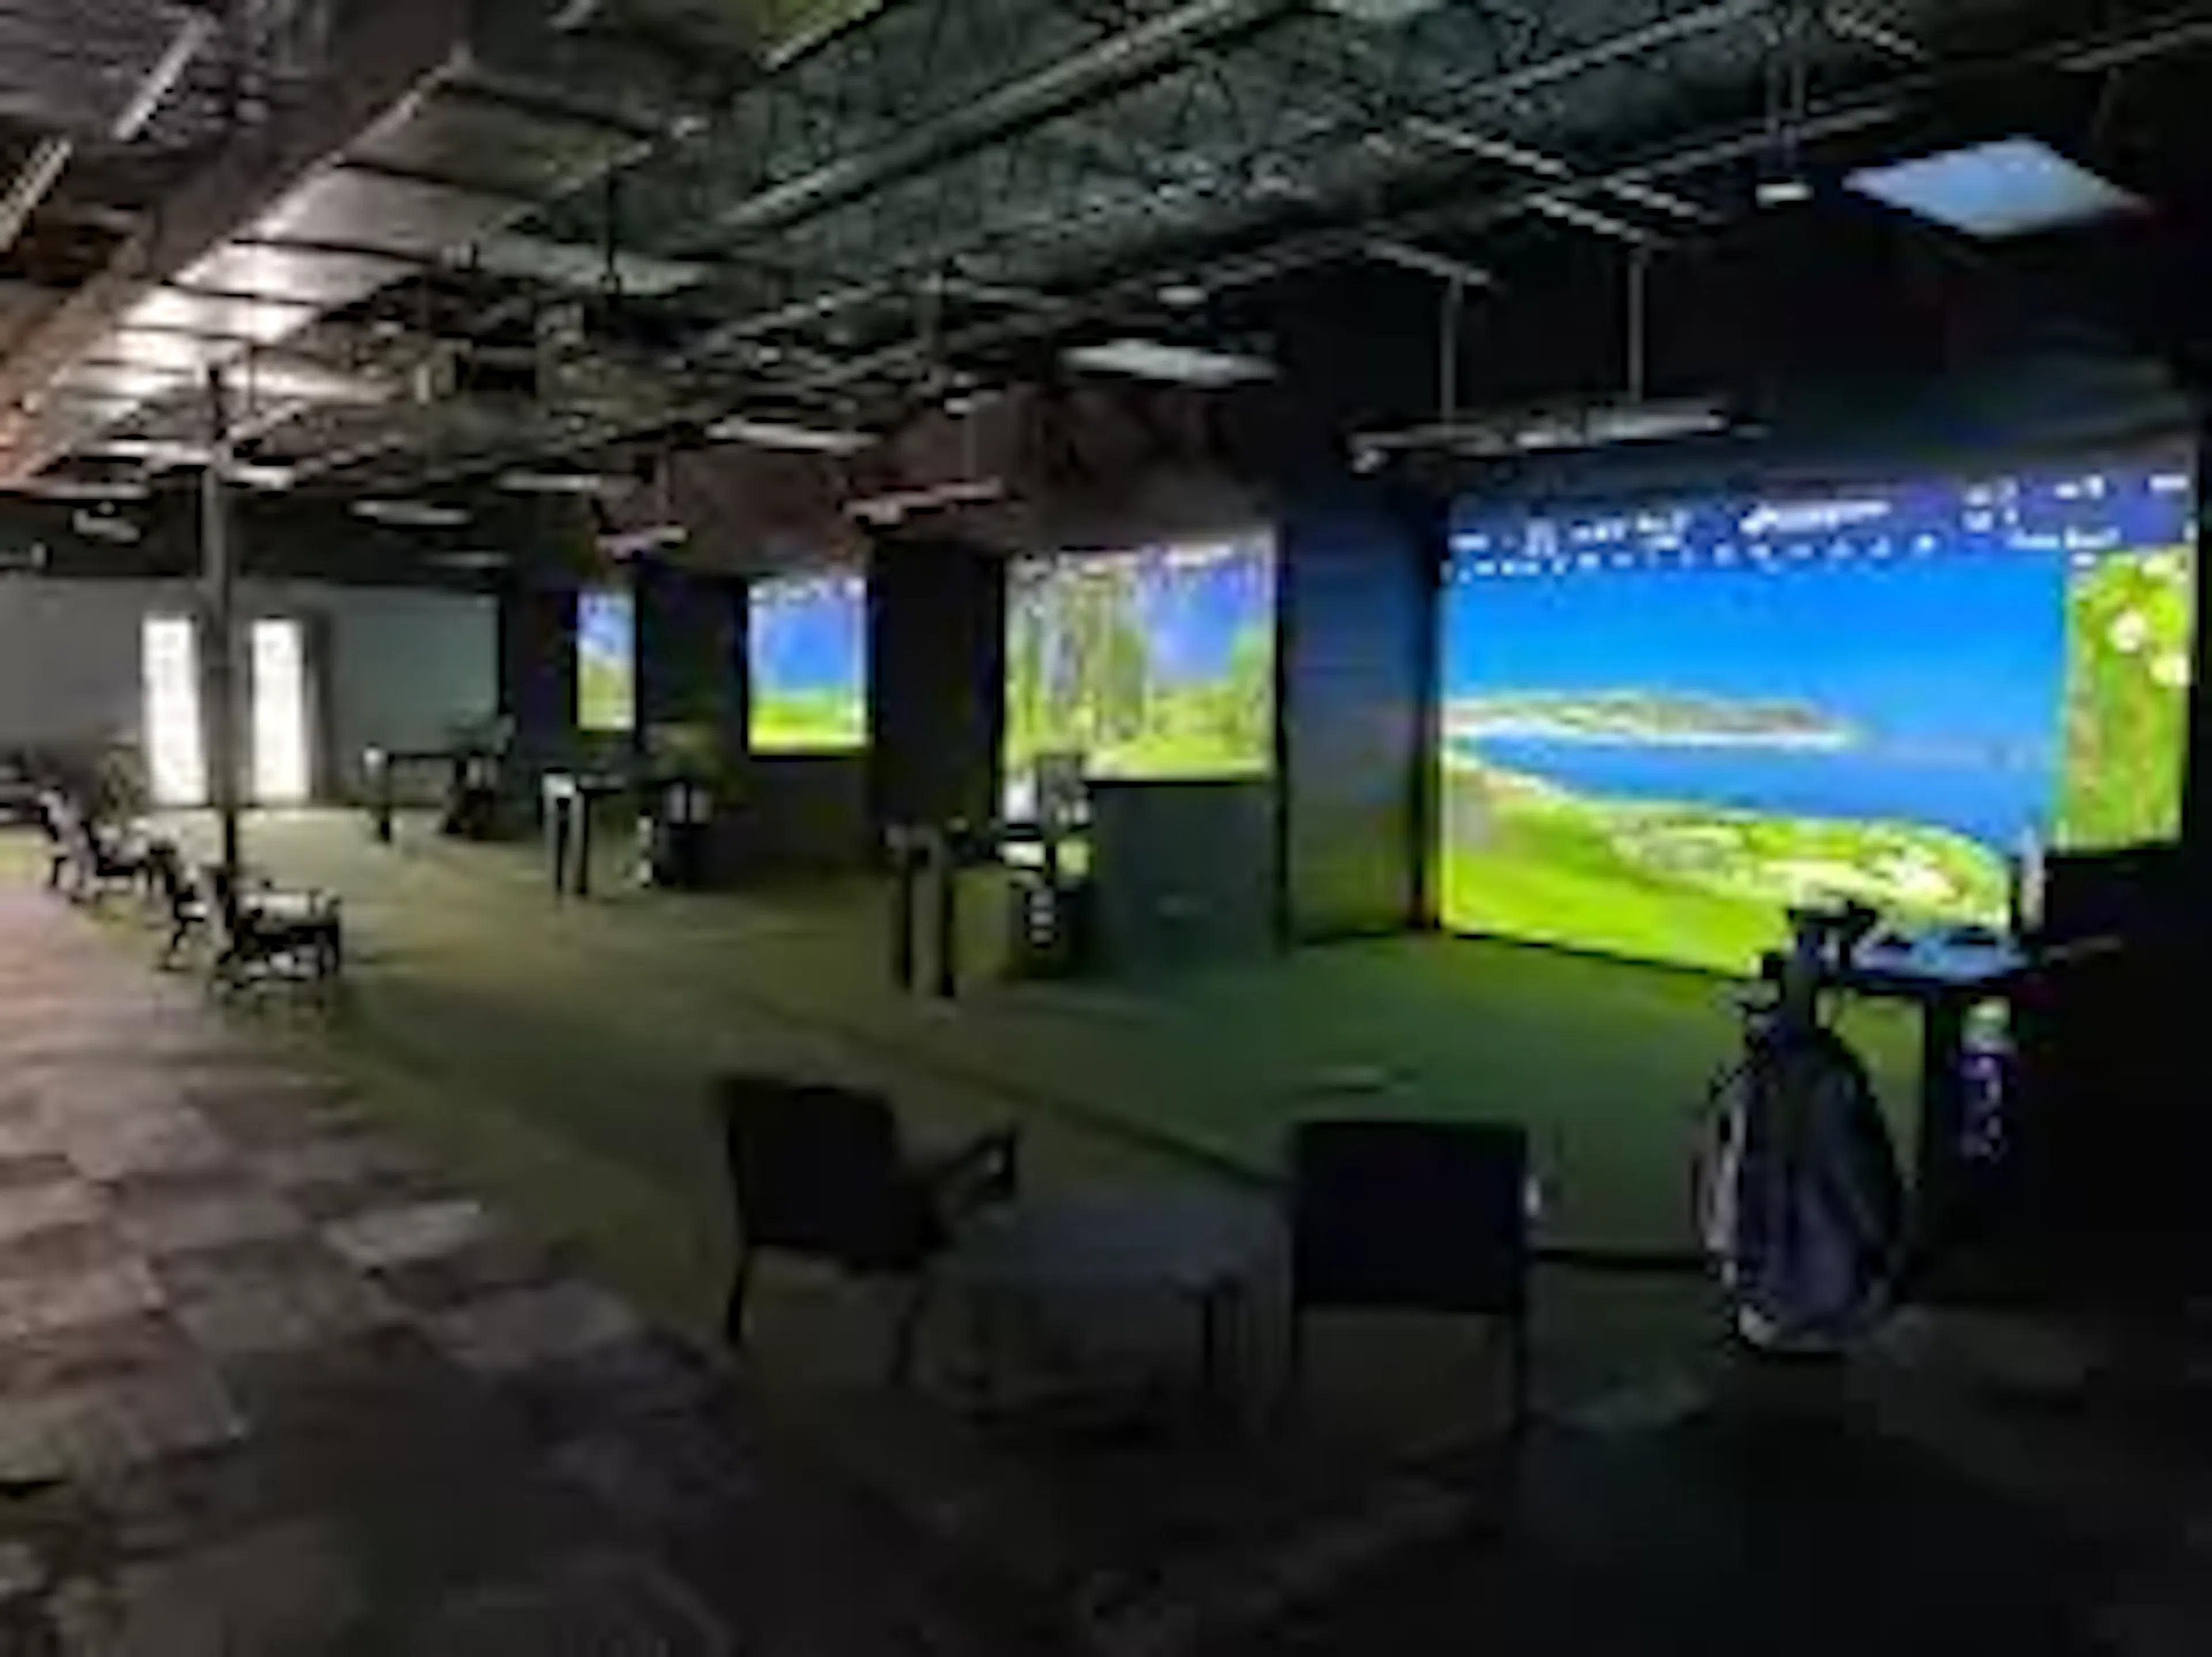 247 indoor golf